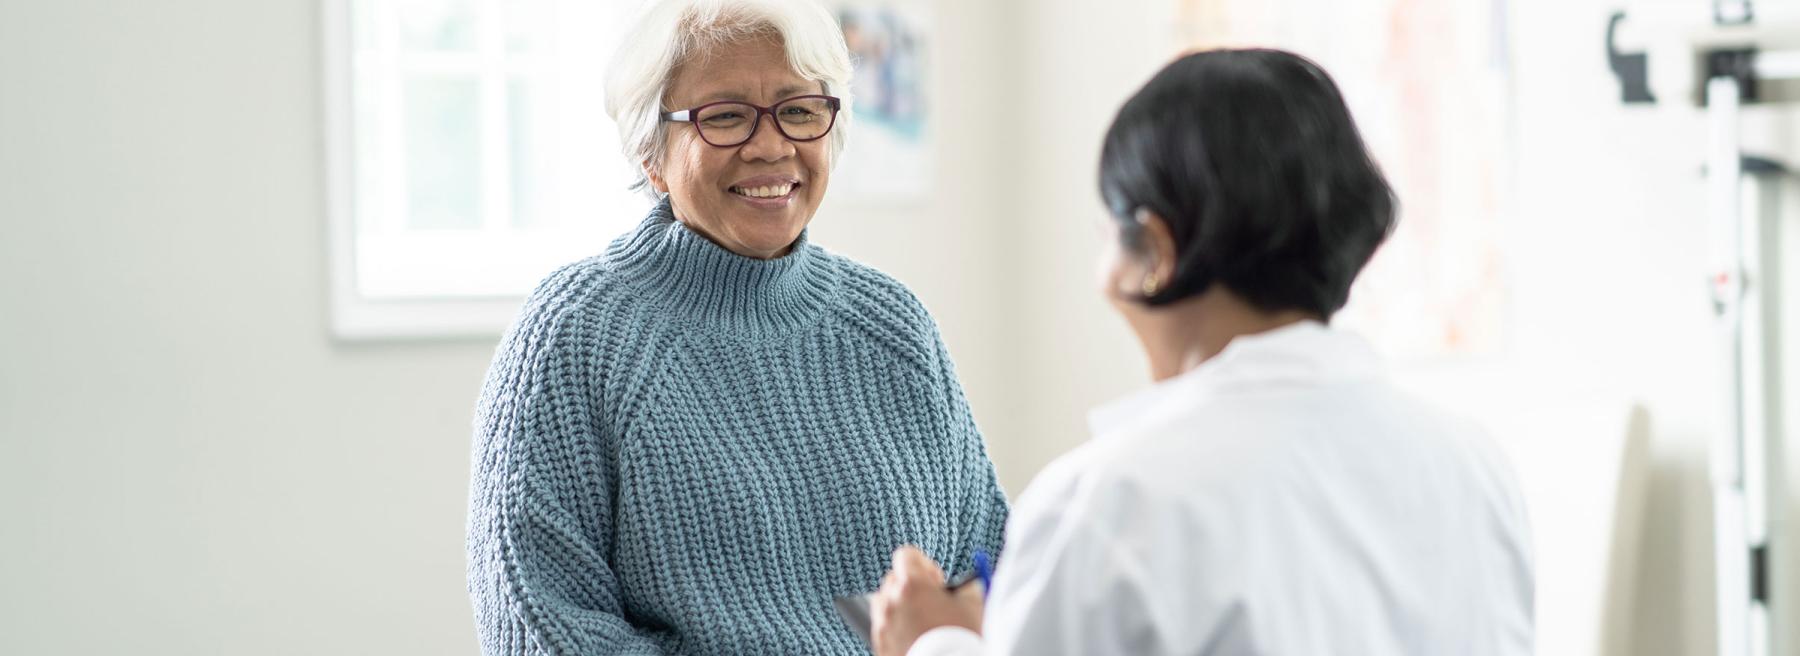 Older adult receiving medical care